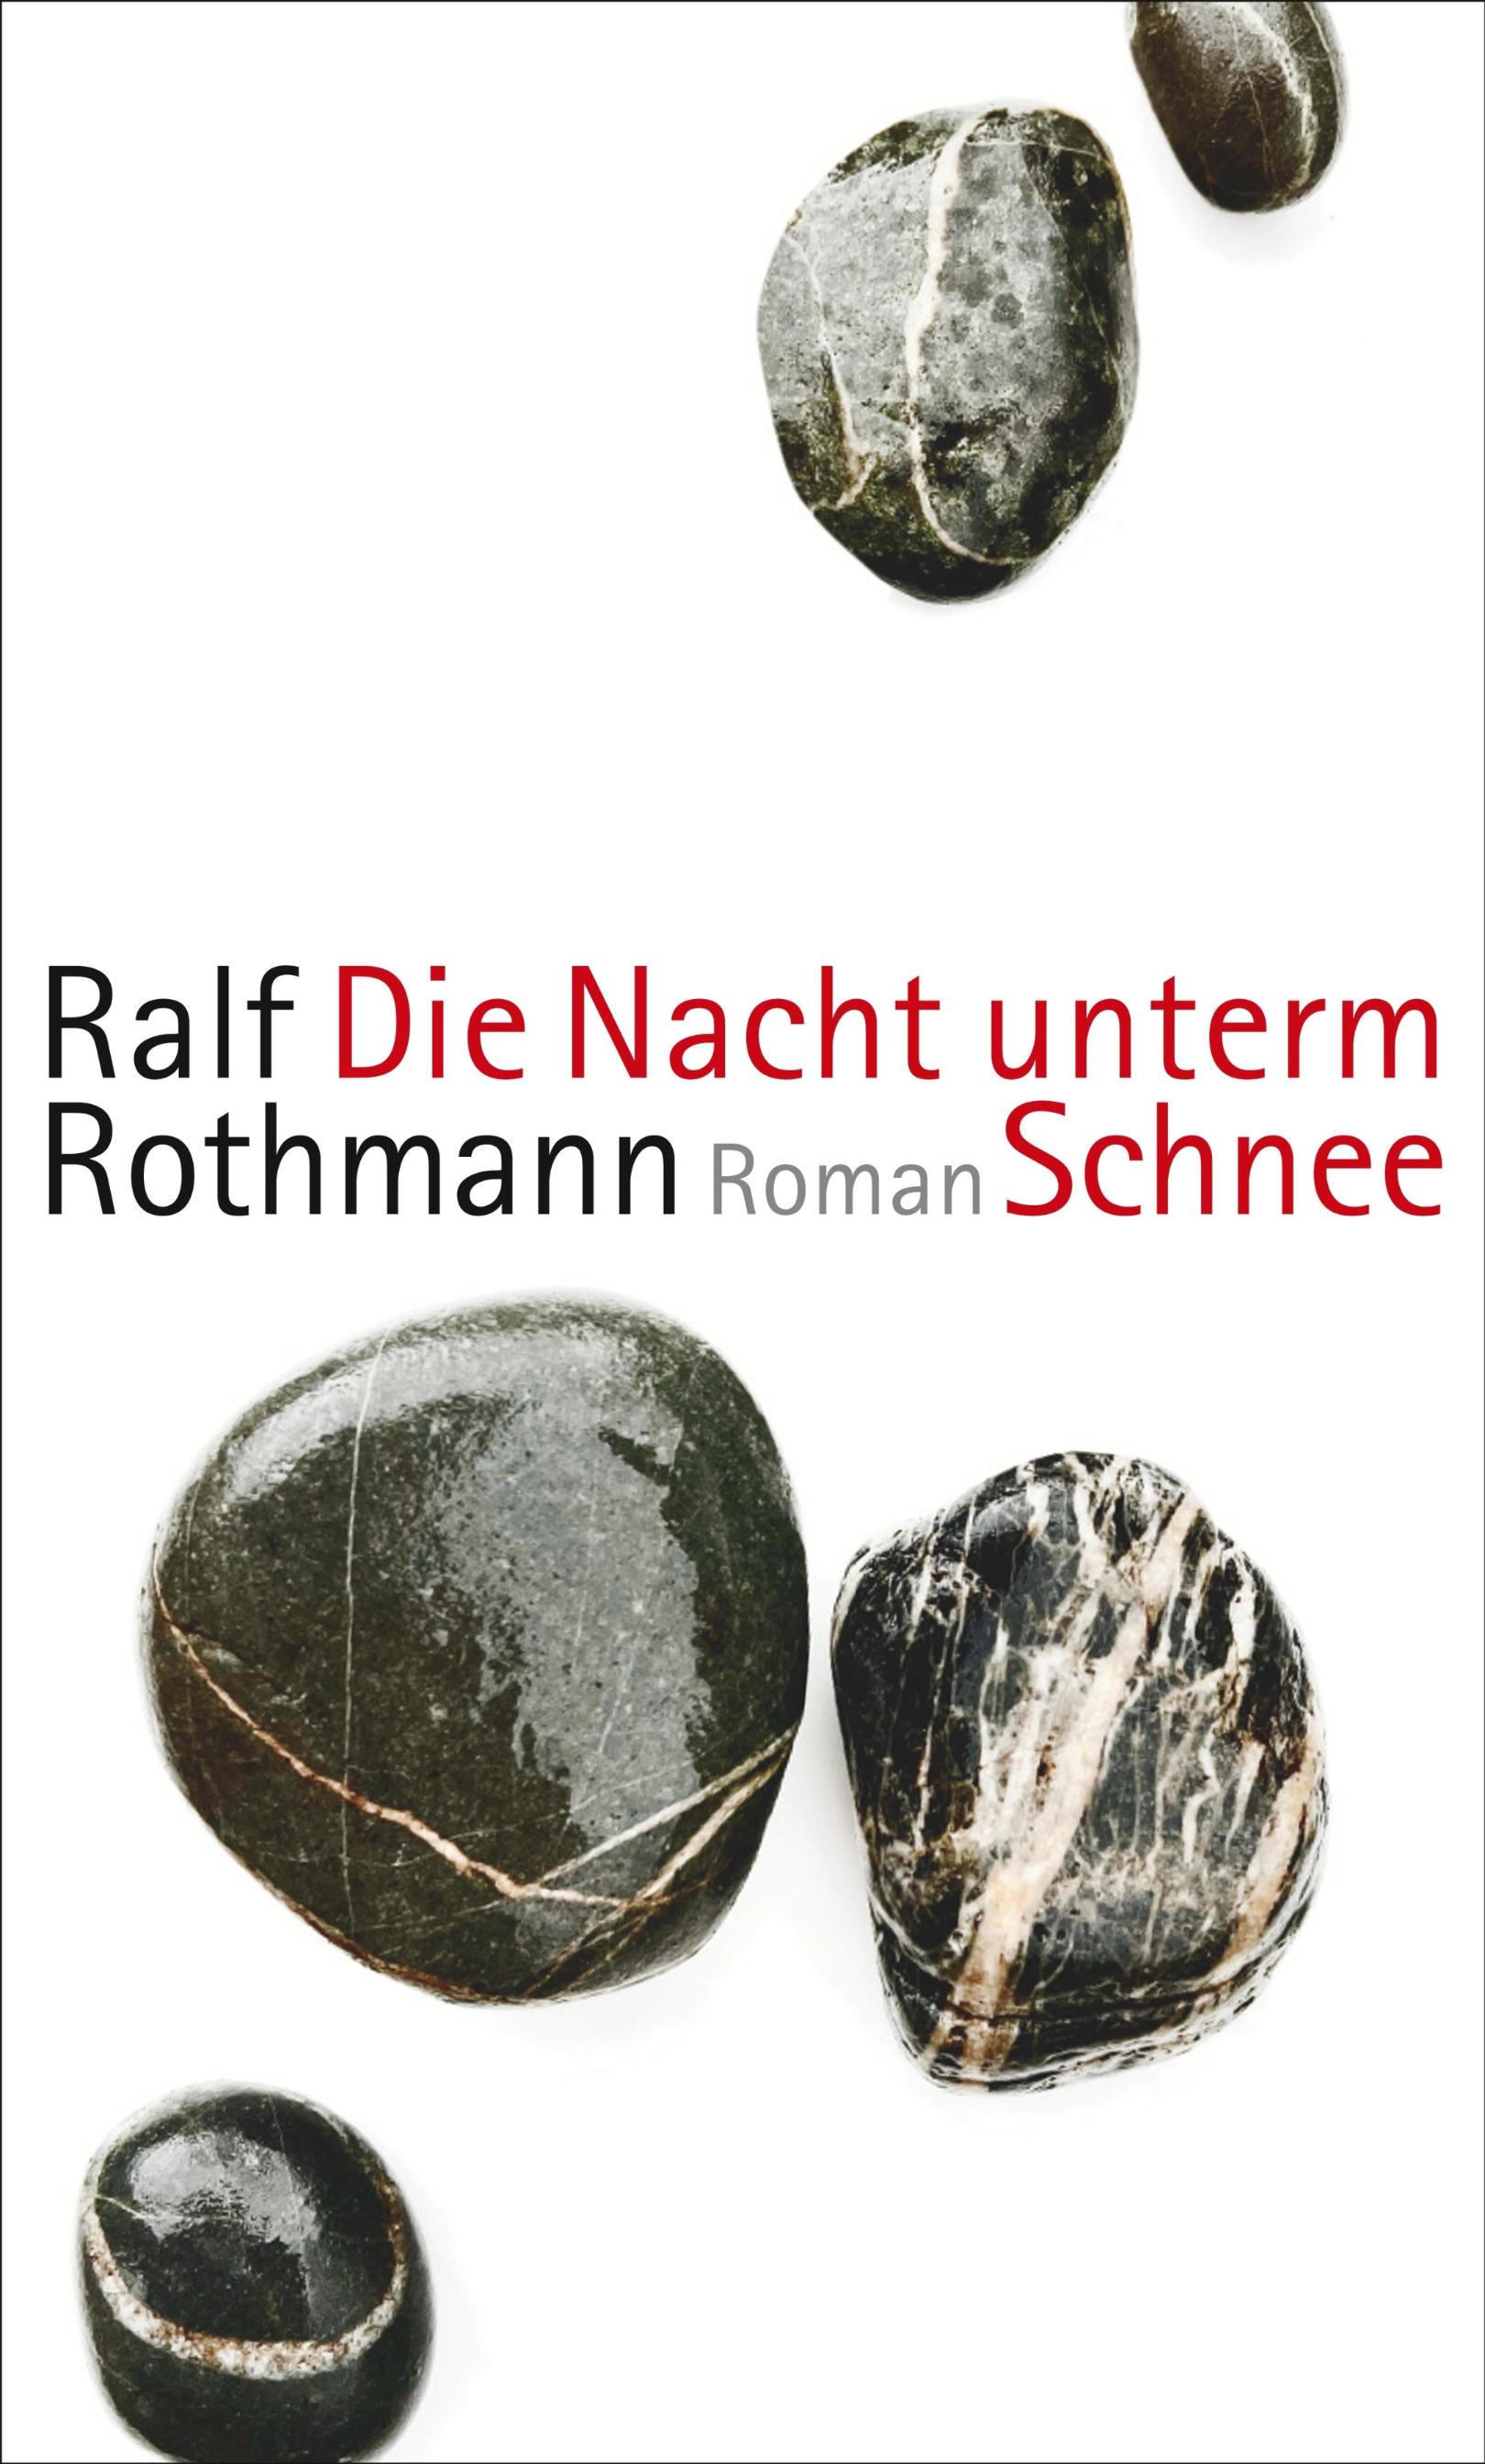 Ralf Rothmann - Die Nacht unterm Schnee (c) Suhrkamp-Verlag